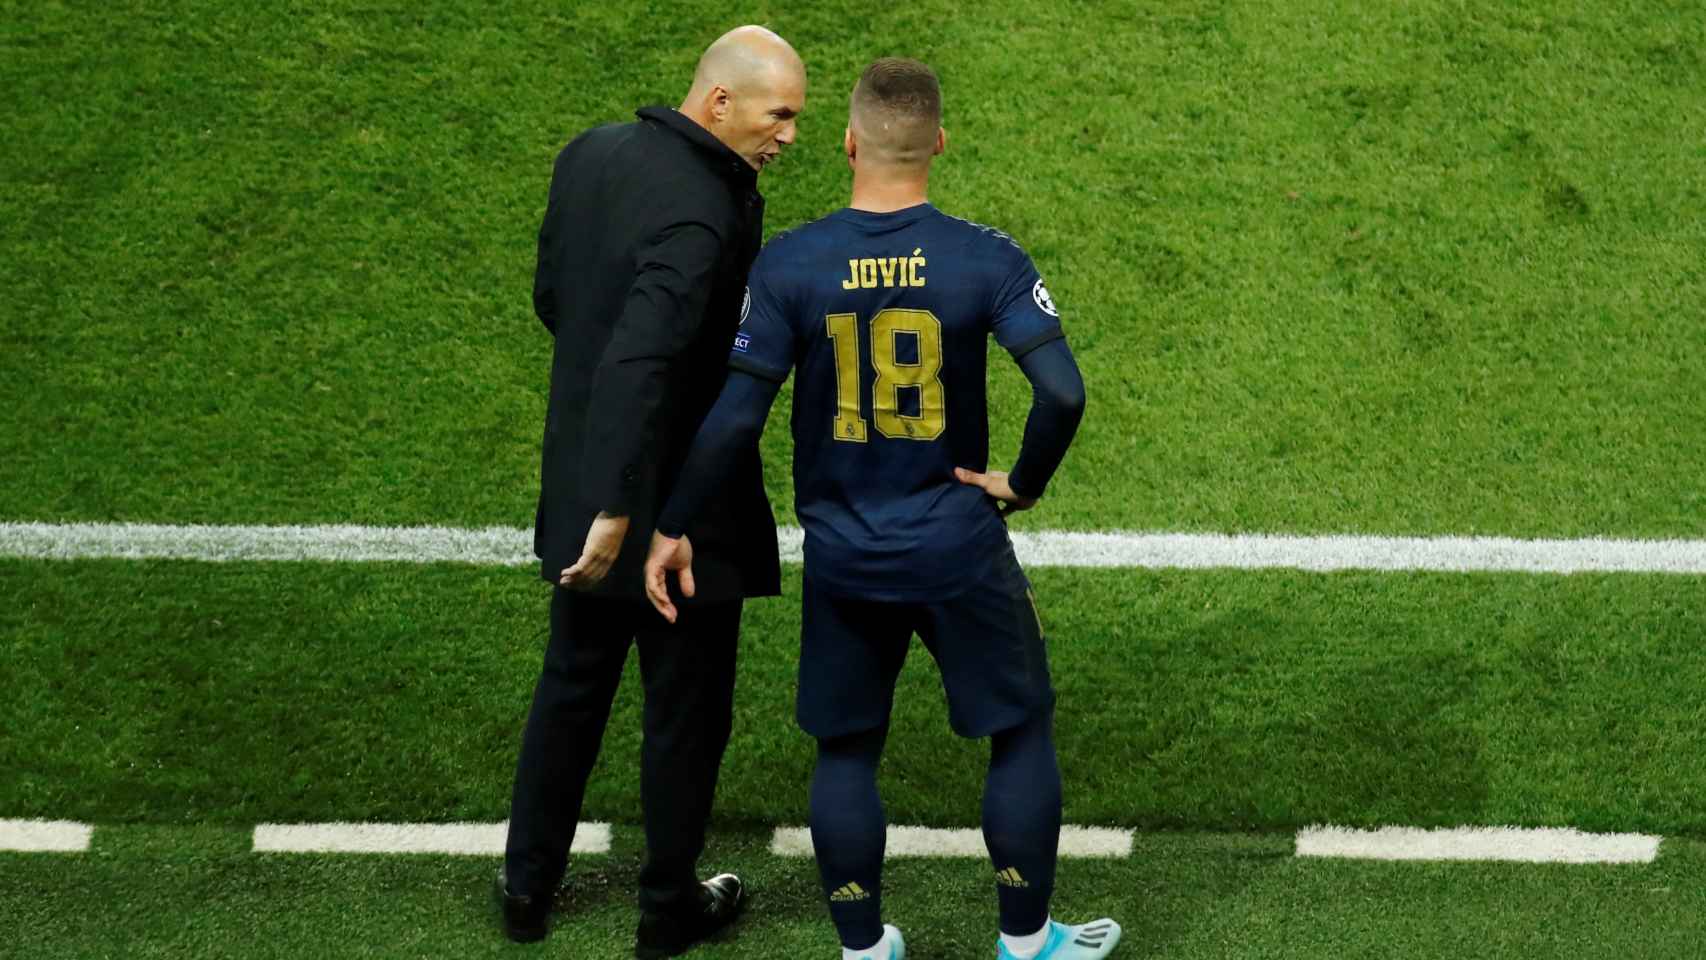 Luka Jovic escucha las órdenes de Zidane antes de saltar al campo